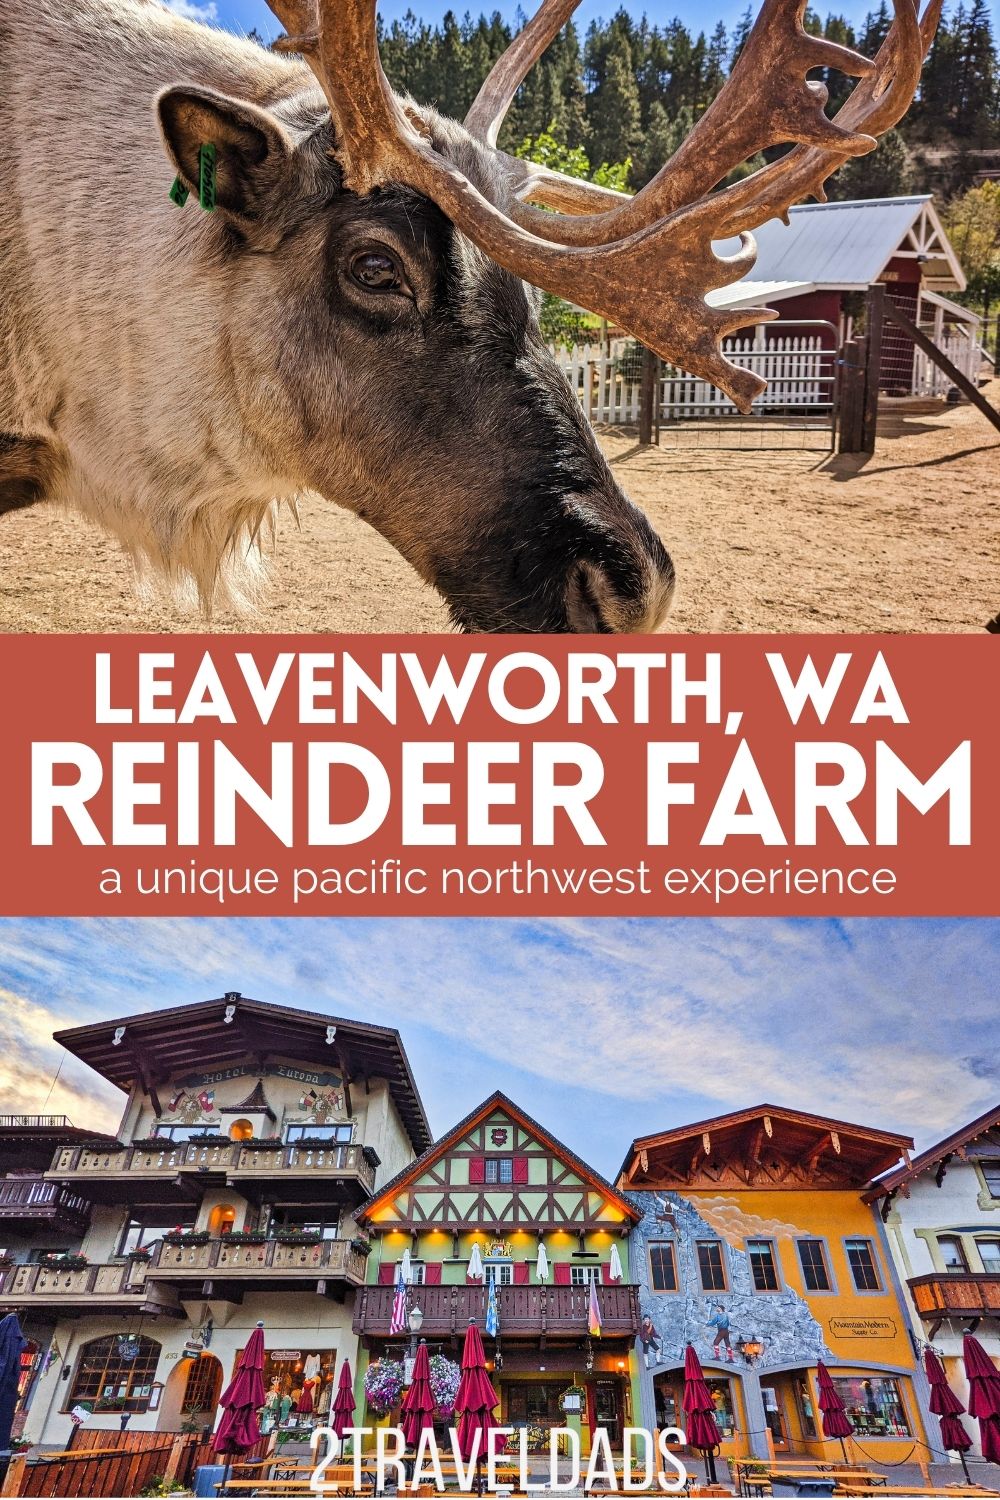 Guide-to-Leavenworth-Reindeer-Farm-pin-2.jpg